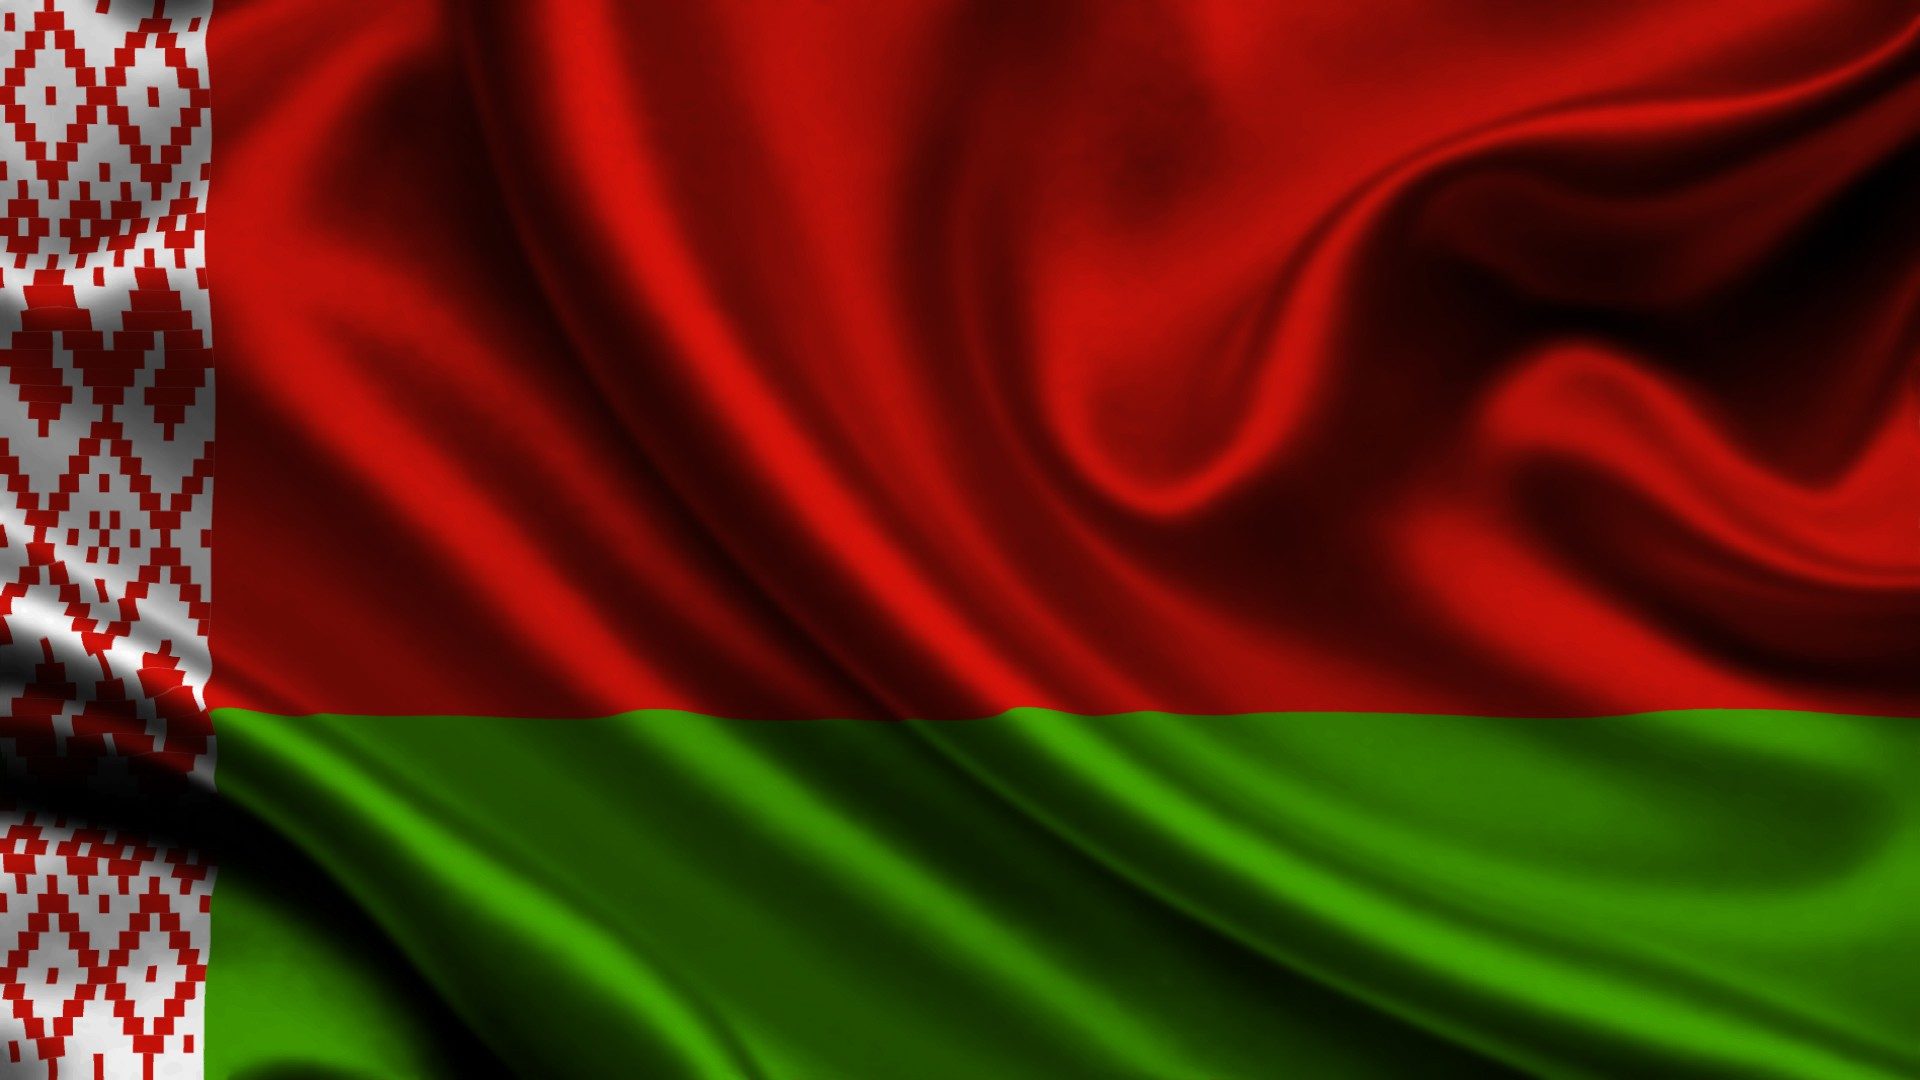 Бизнес-миссия в Республику Беларусь